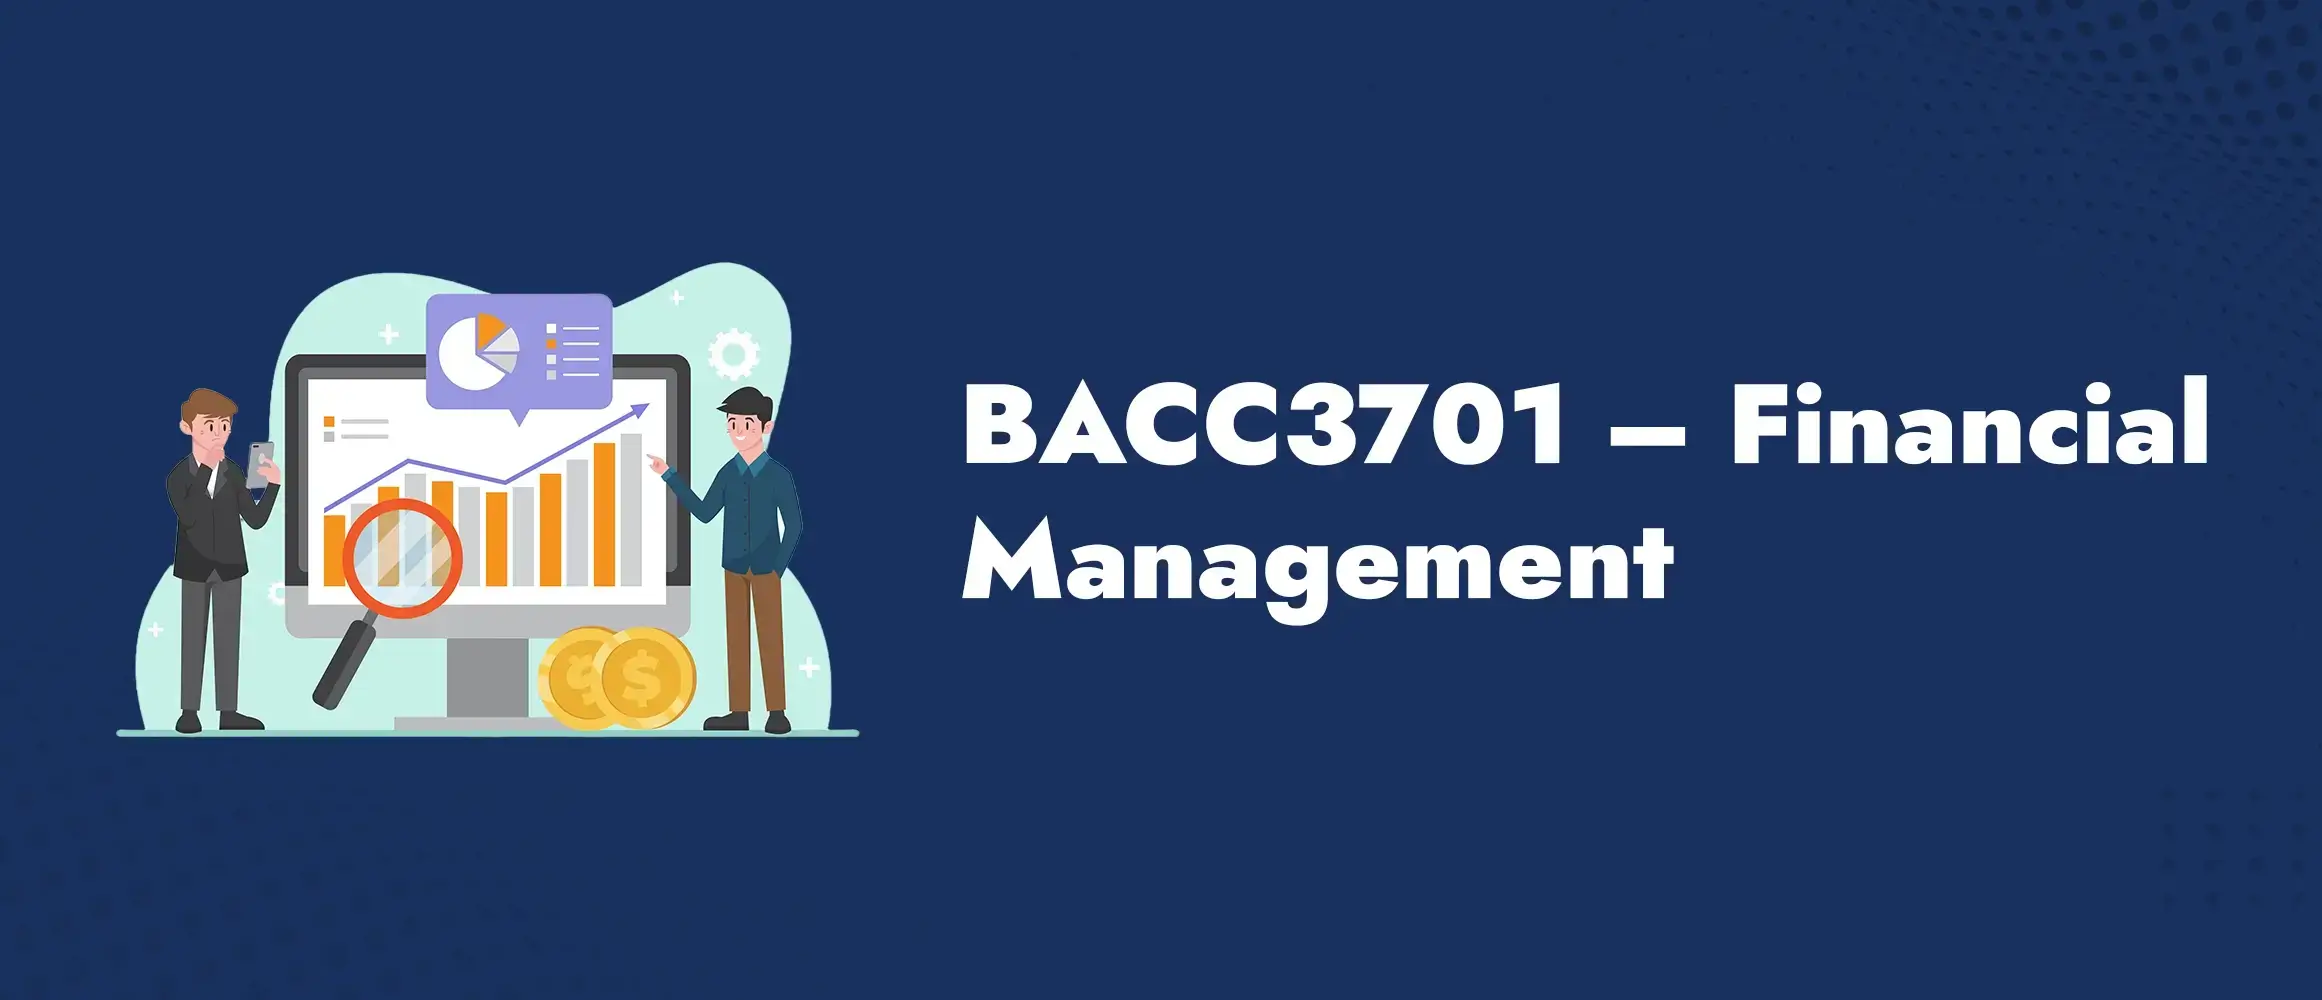 BACC3701 Financial Management